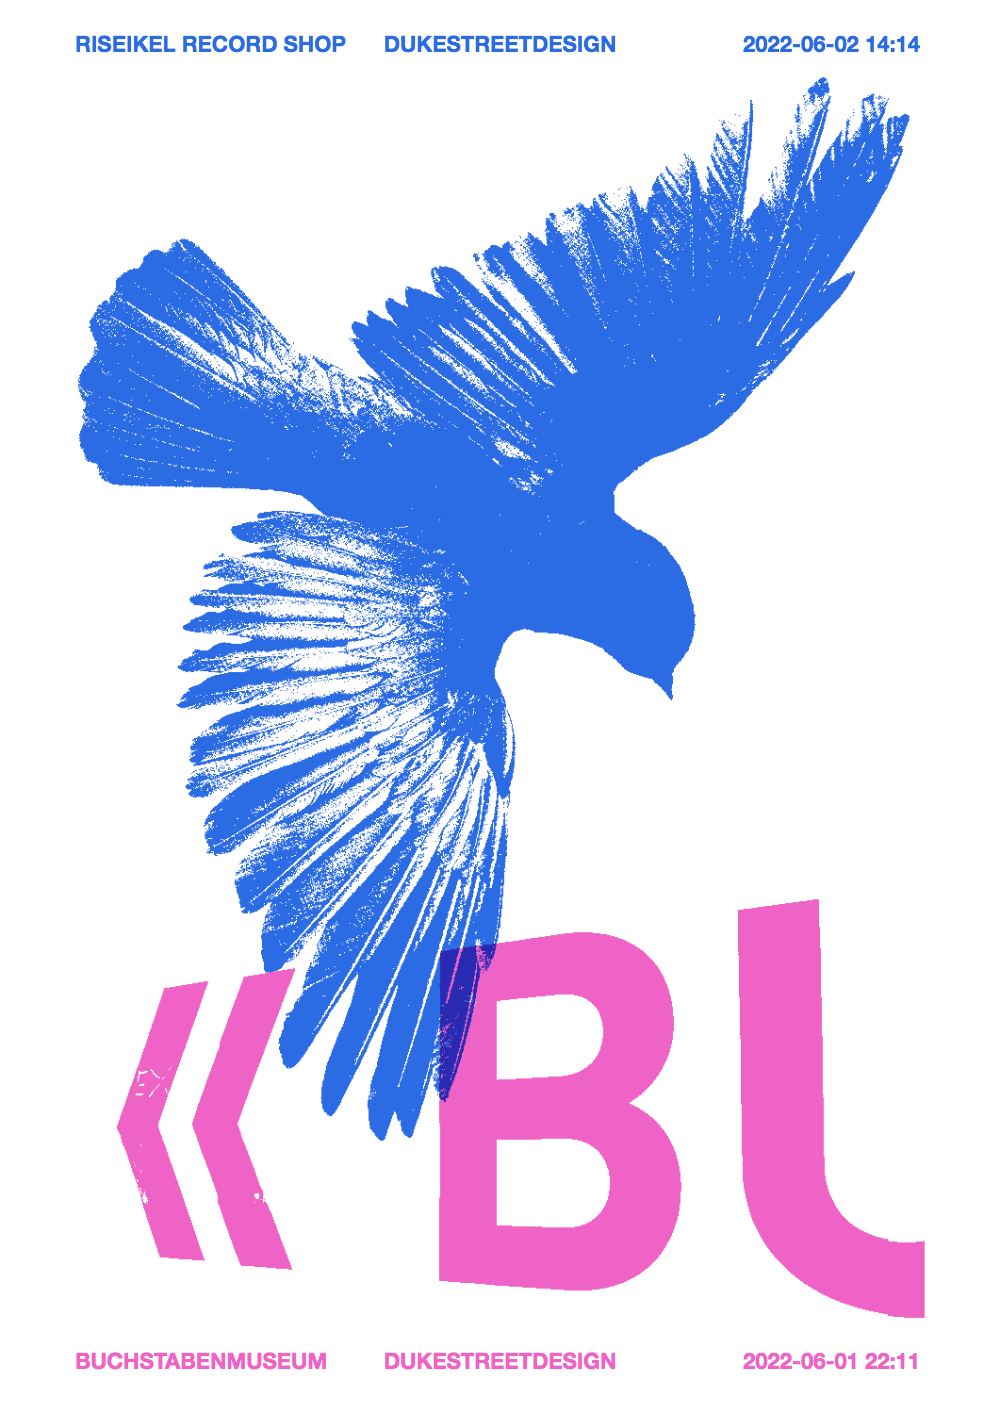 Bird and Buchstaben